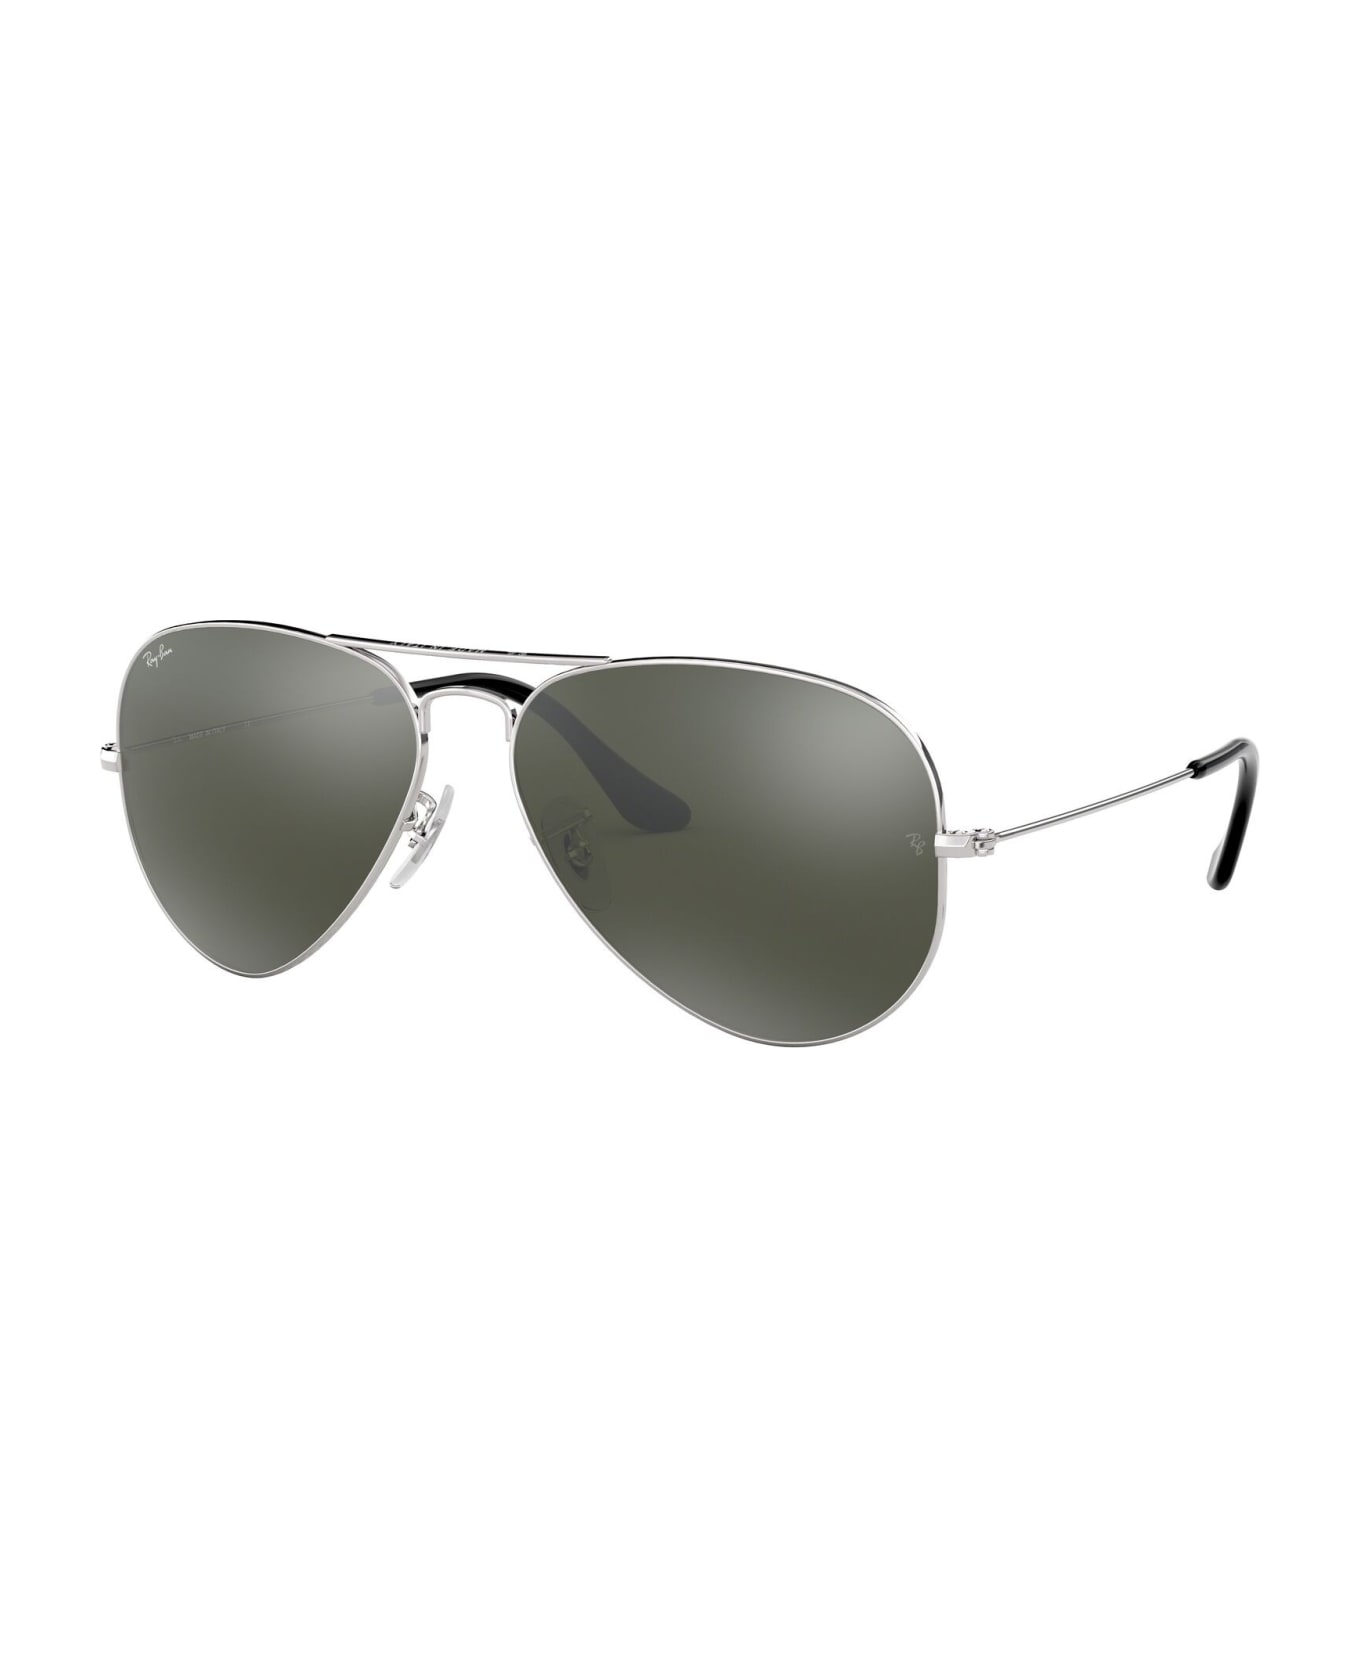 Ray-Ban Sunglasses - Silver/Specchiato silver